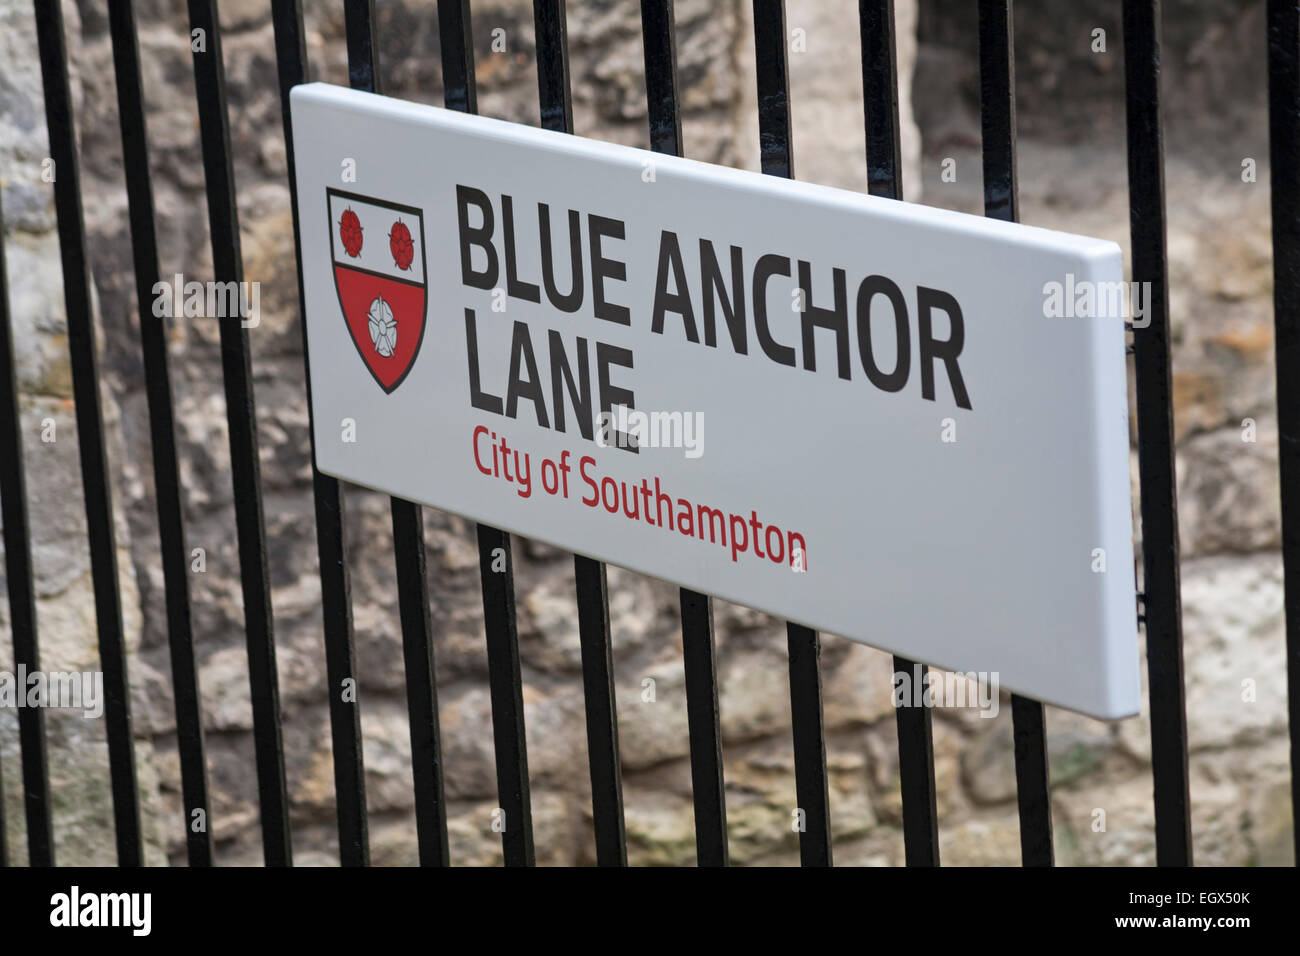 Blue Anchor Lane Ville de Southampton signe sur les garde-corps Banque D'Images